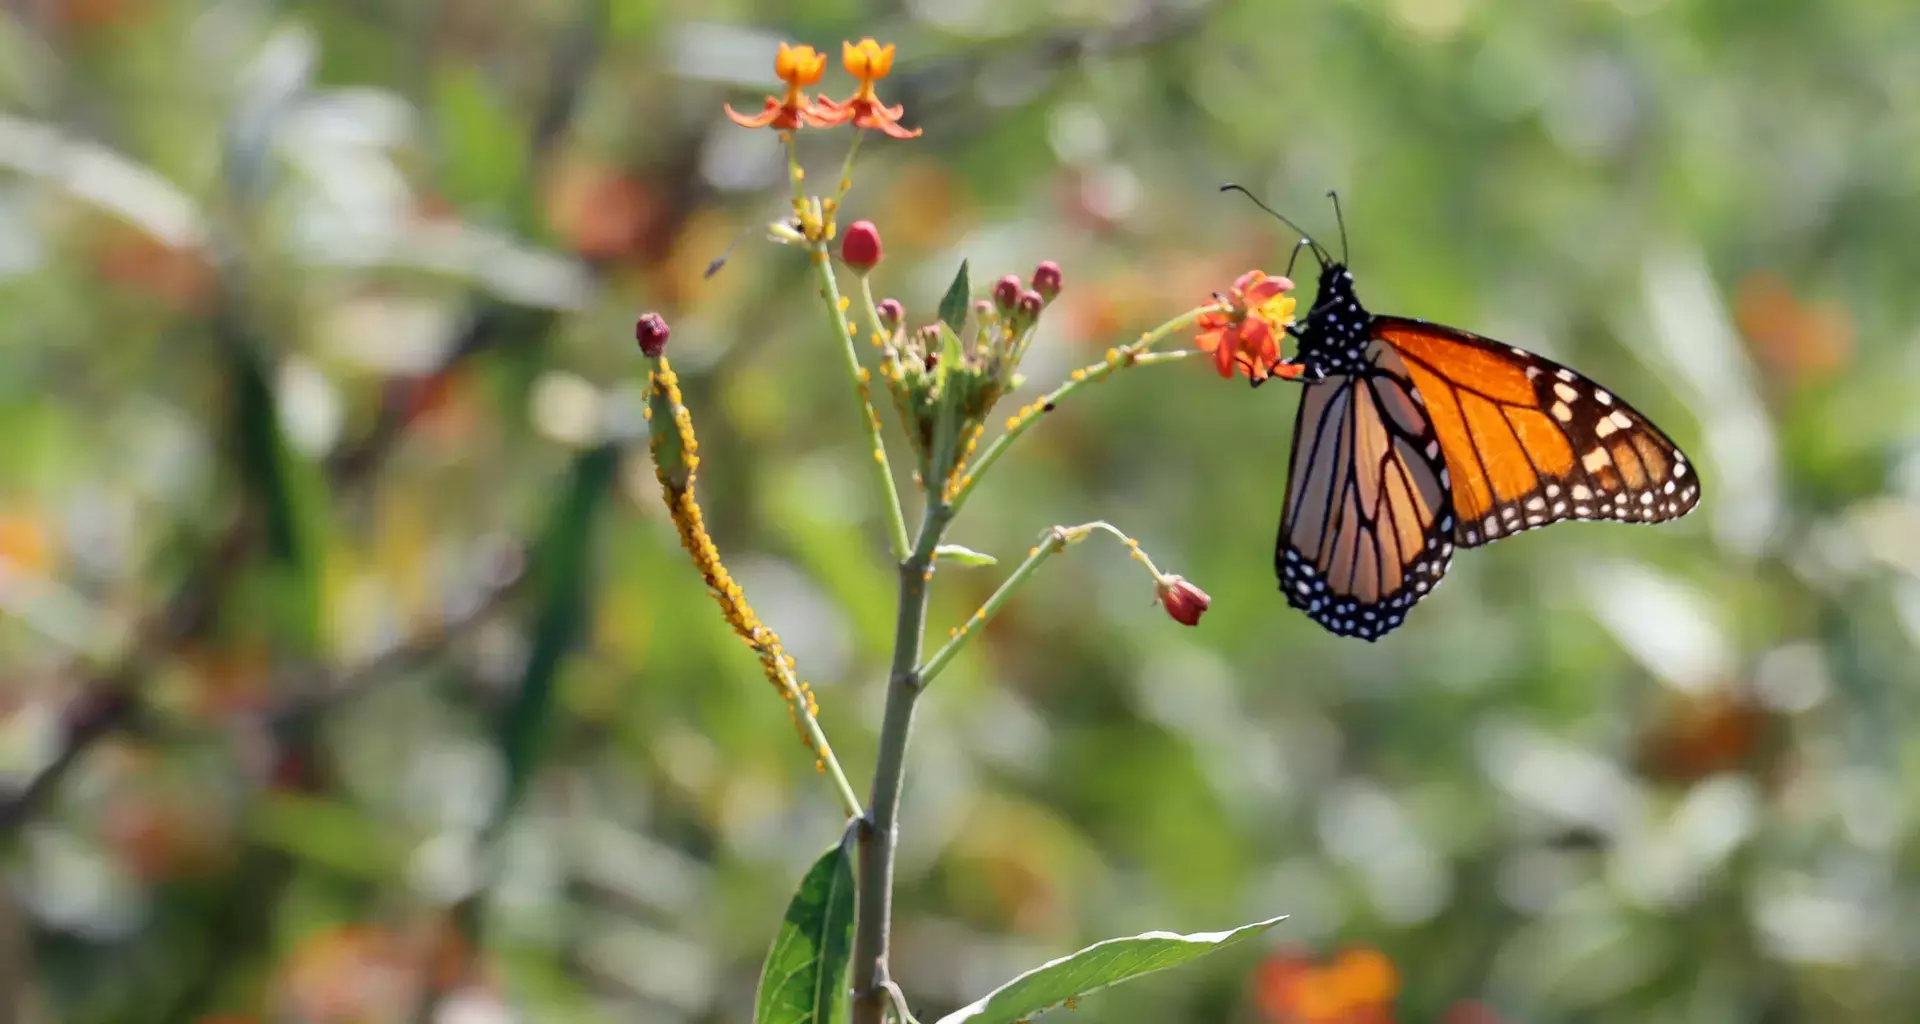 La mariposa monarca come asclepia cultivada en el campus Monterrey.